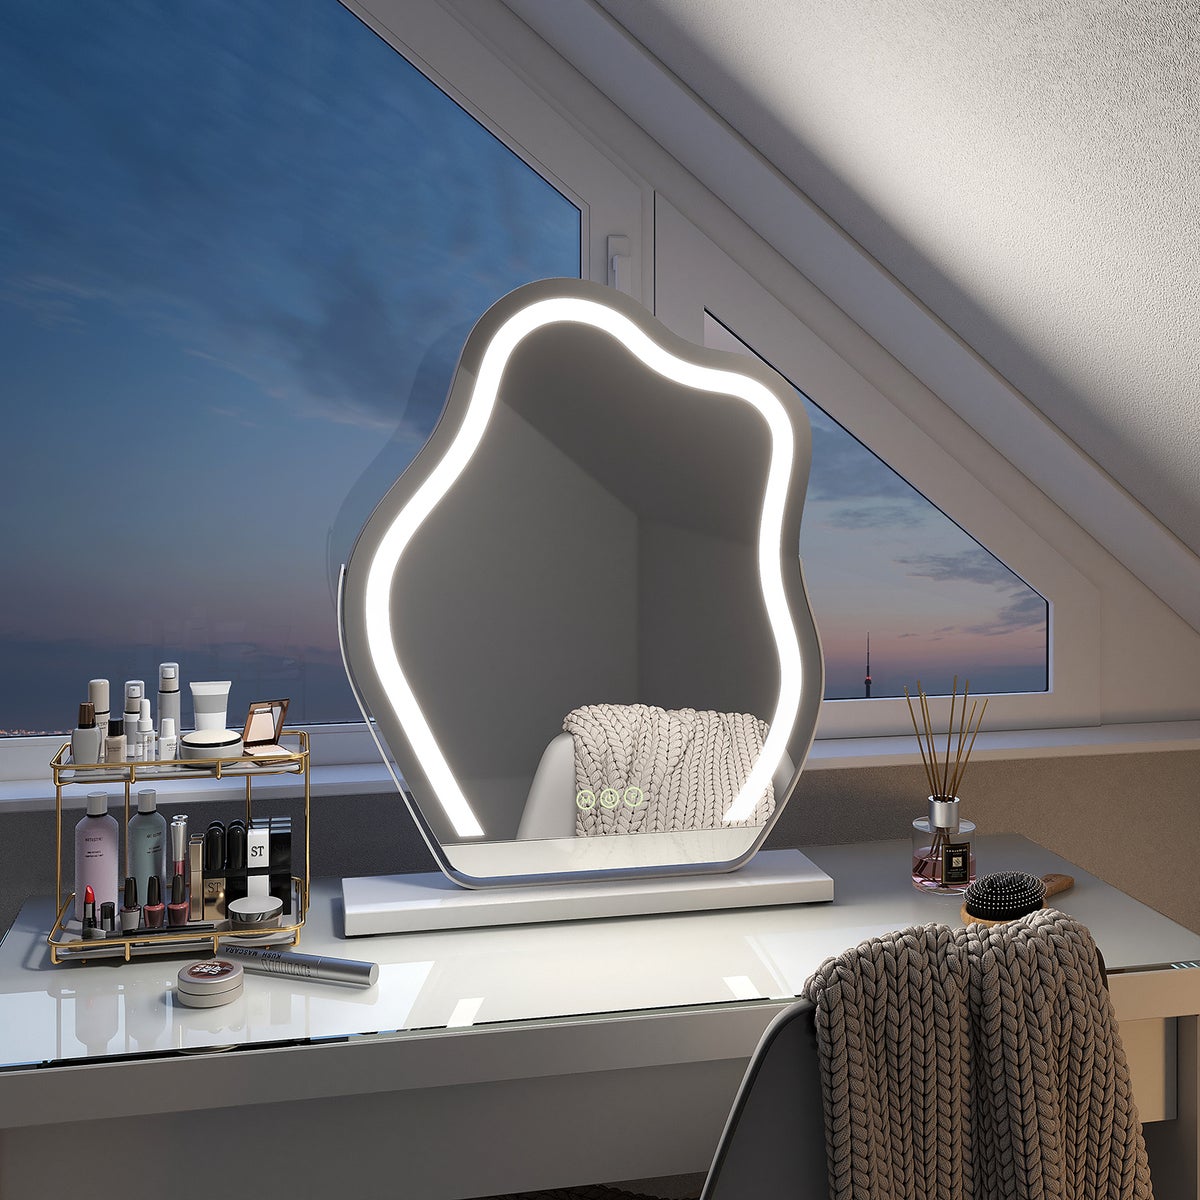 EMKE Schminkspiegel mit Beleuchtung Unregelmäßige Kurve Kosmetikspiegel 360° Drehbar, Touchschalter, 3 Lichtfarben Dimmbar und Memory-Funktion Höhe 45 cm Weiß Rahmen